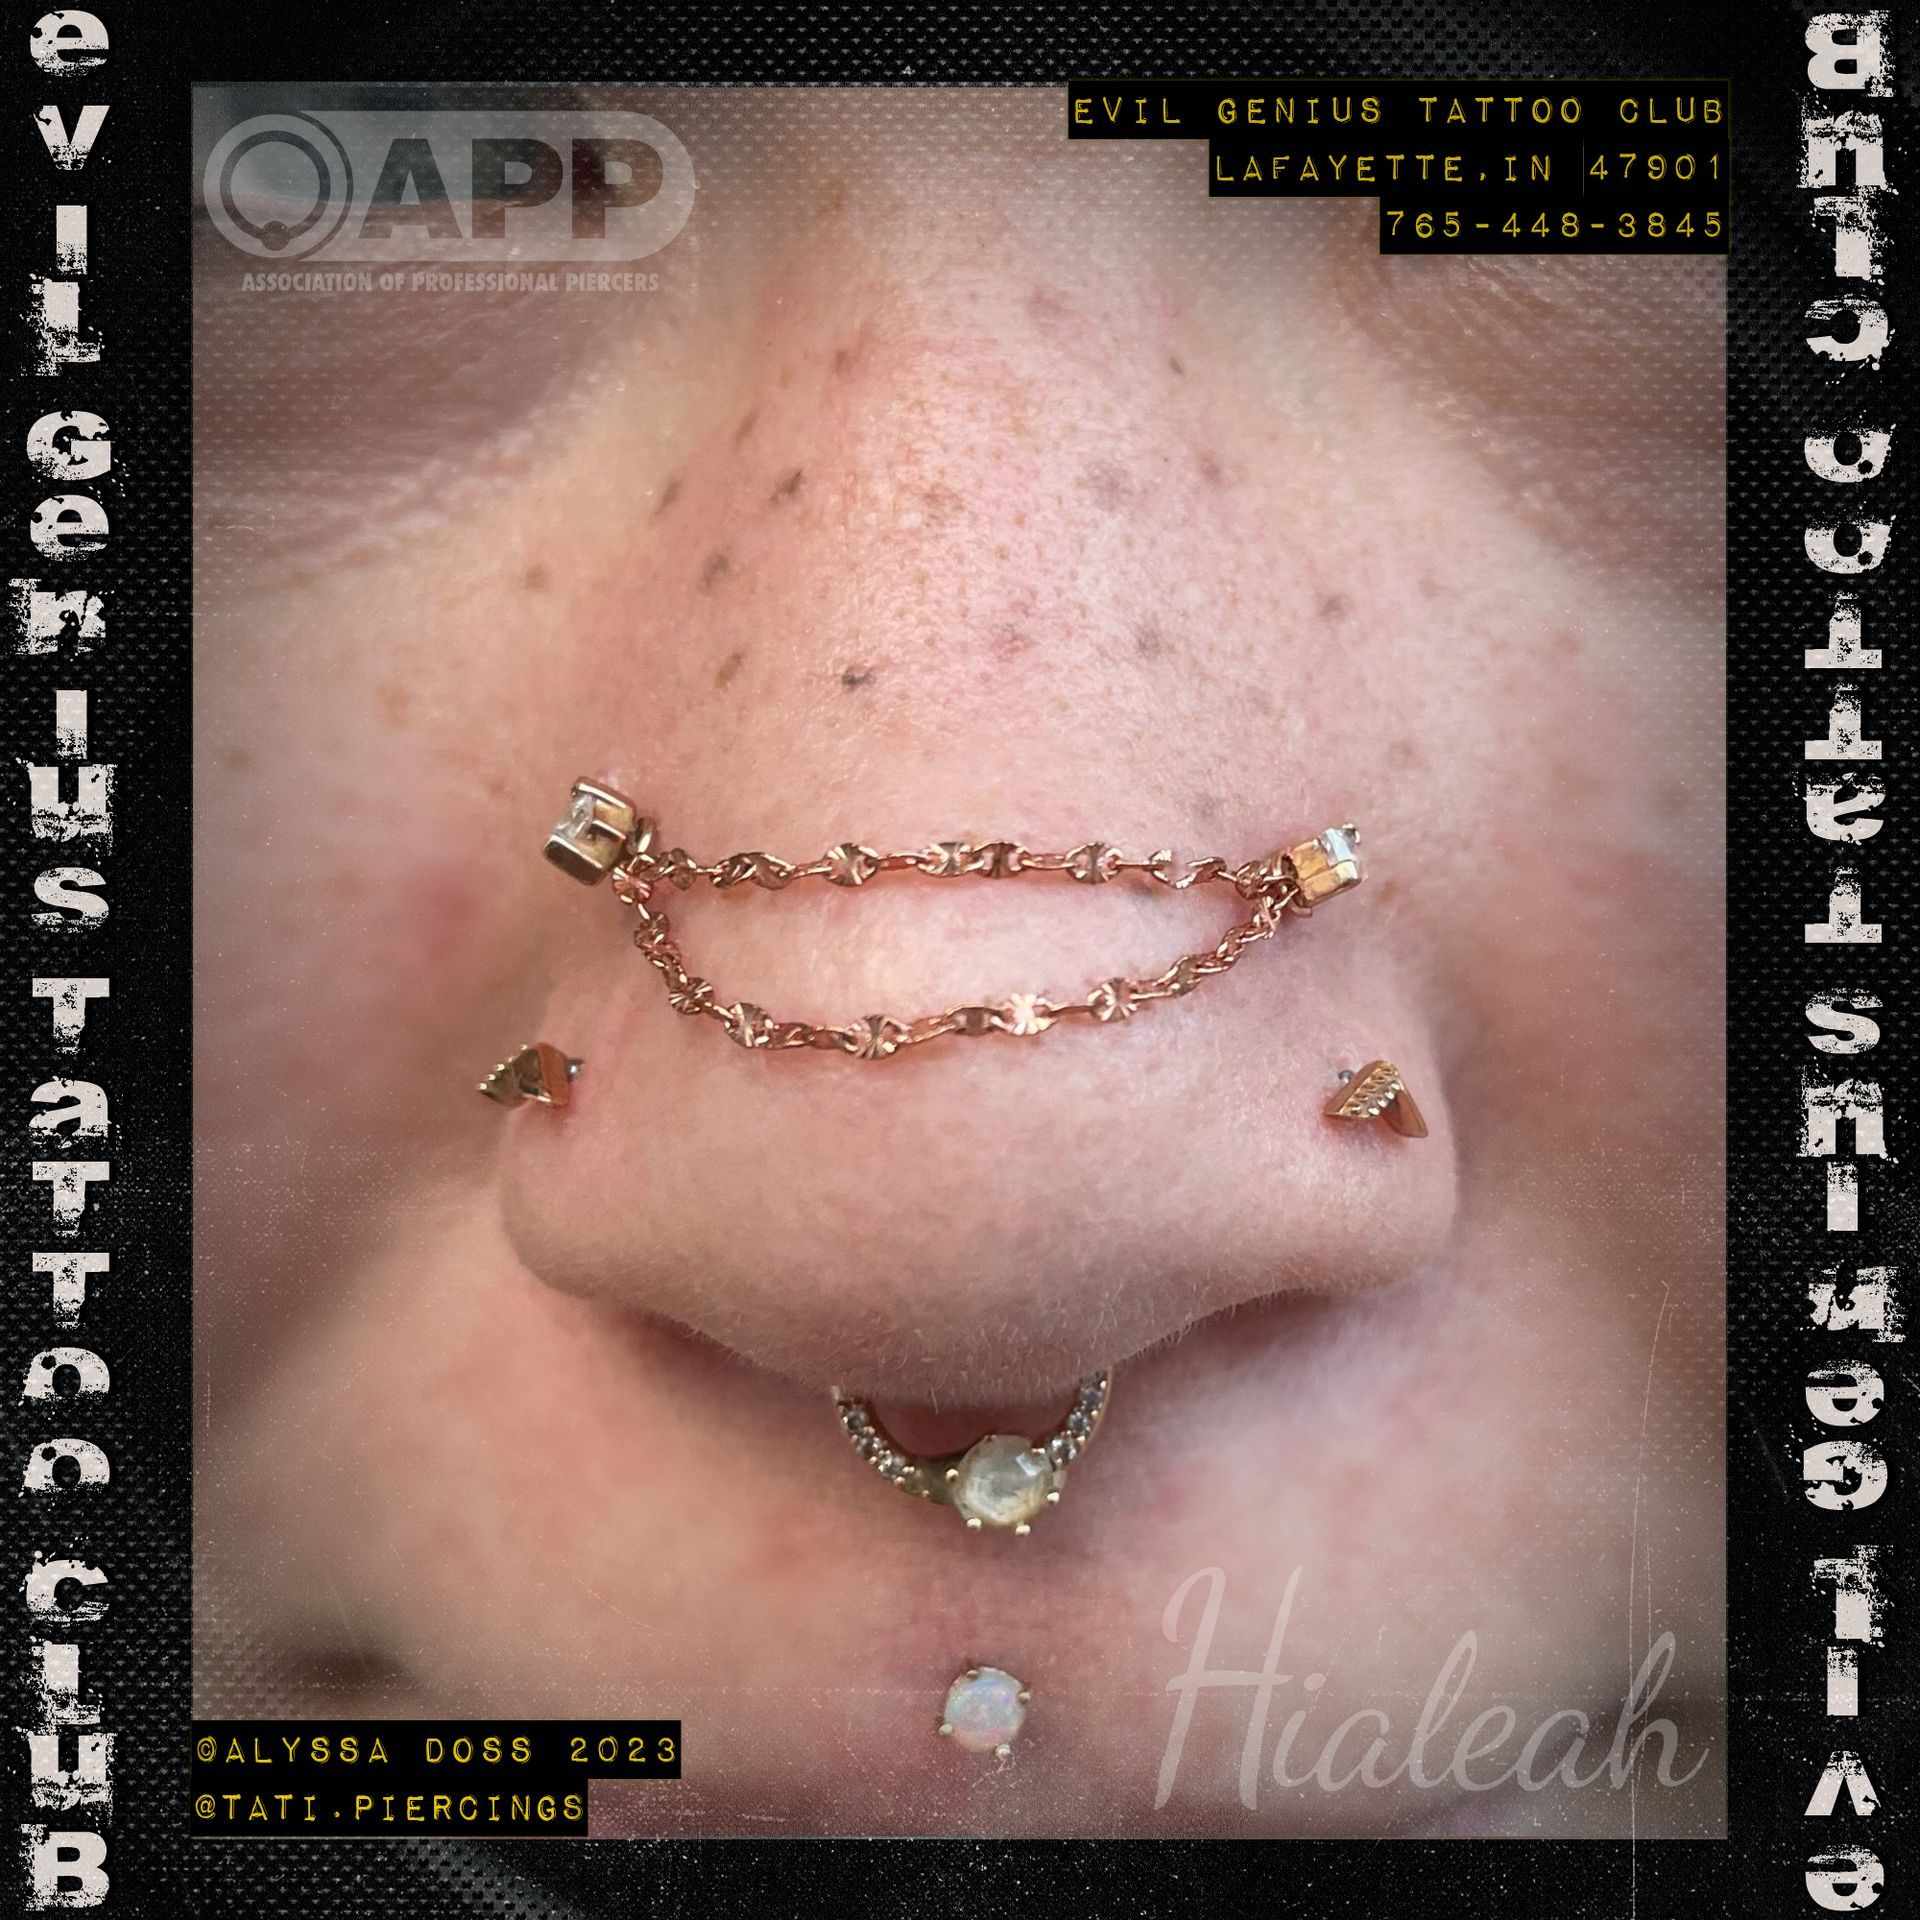 nostril chain piercing by Alyssa Doss